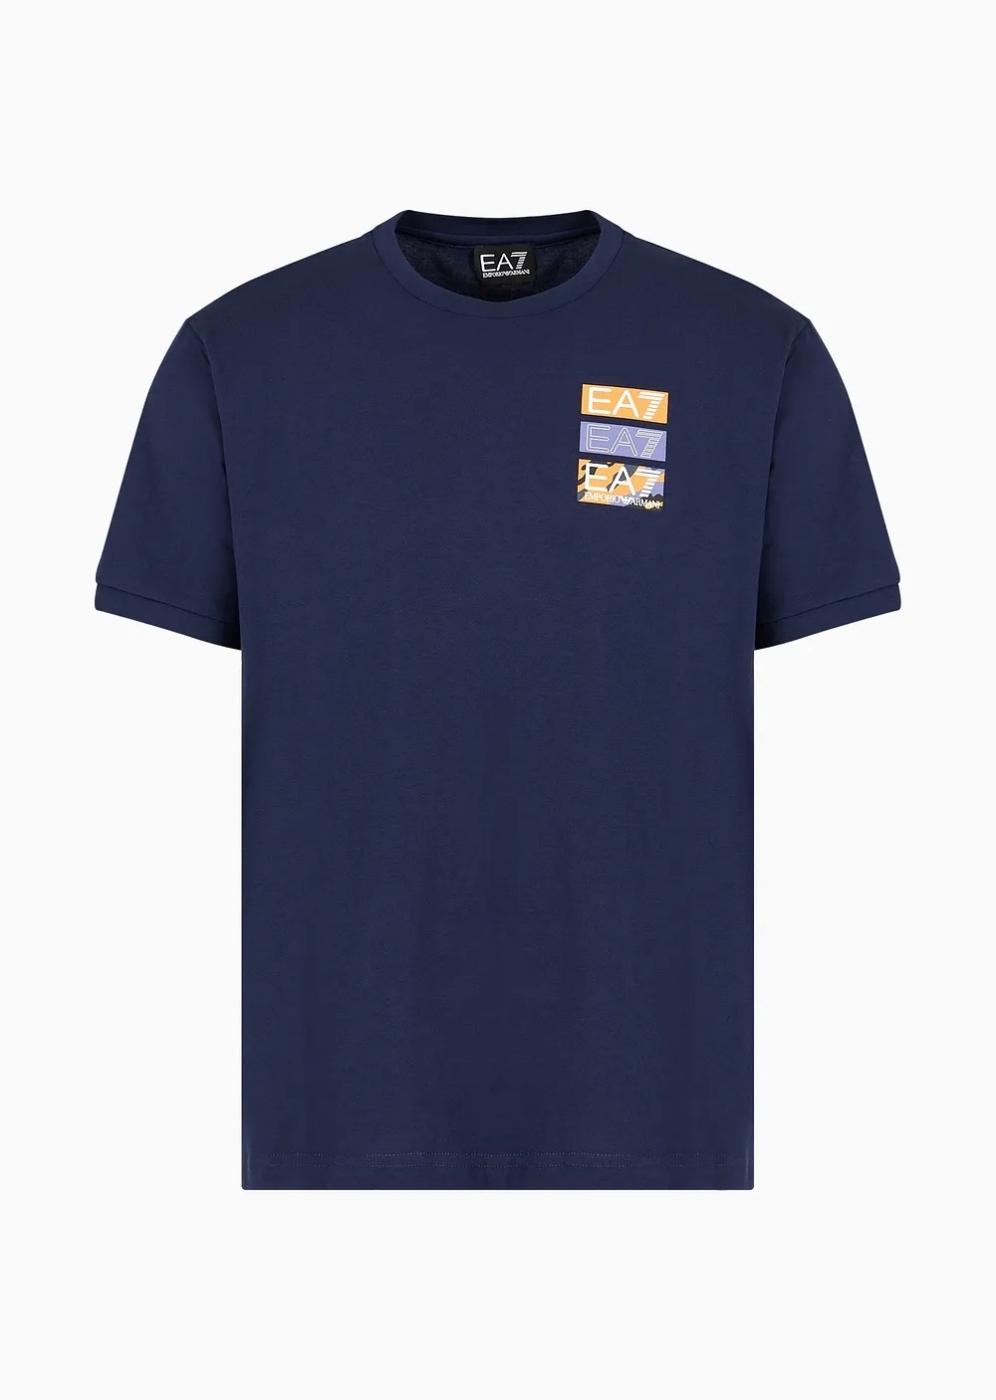 Camiseta EA7 navy logo naranja hombre